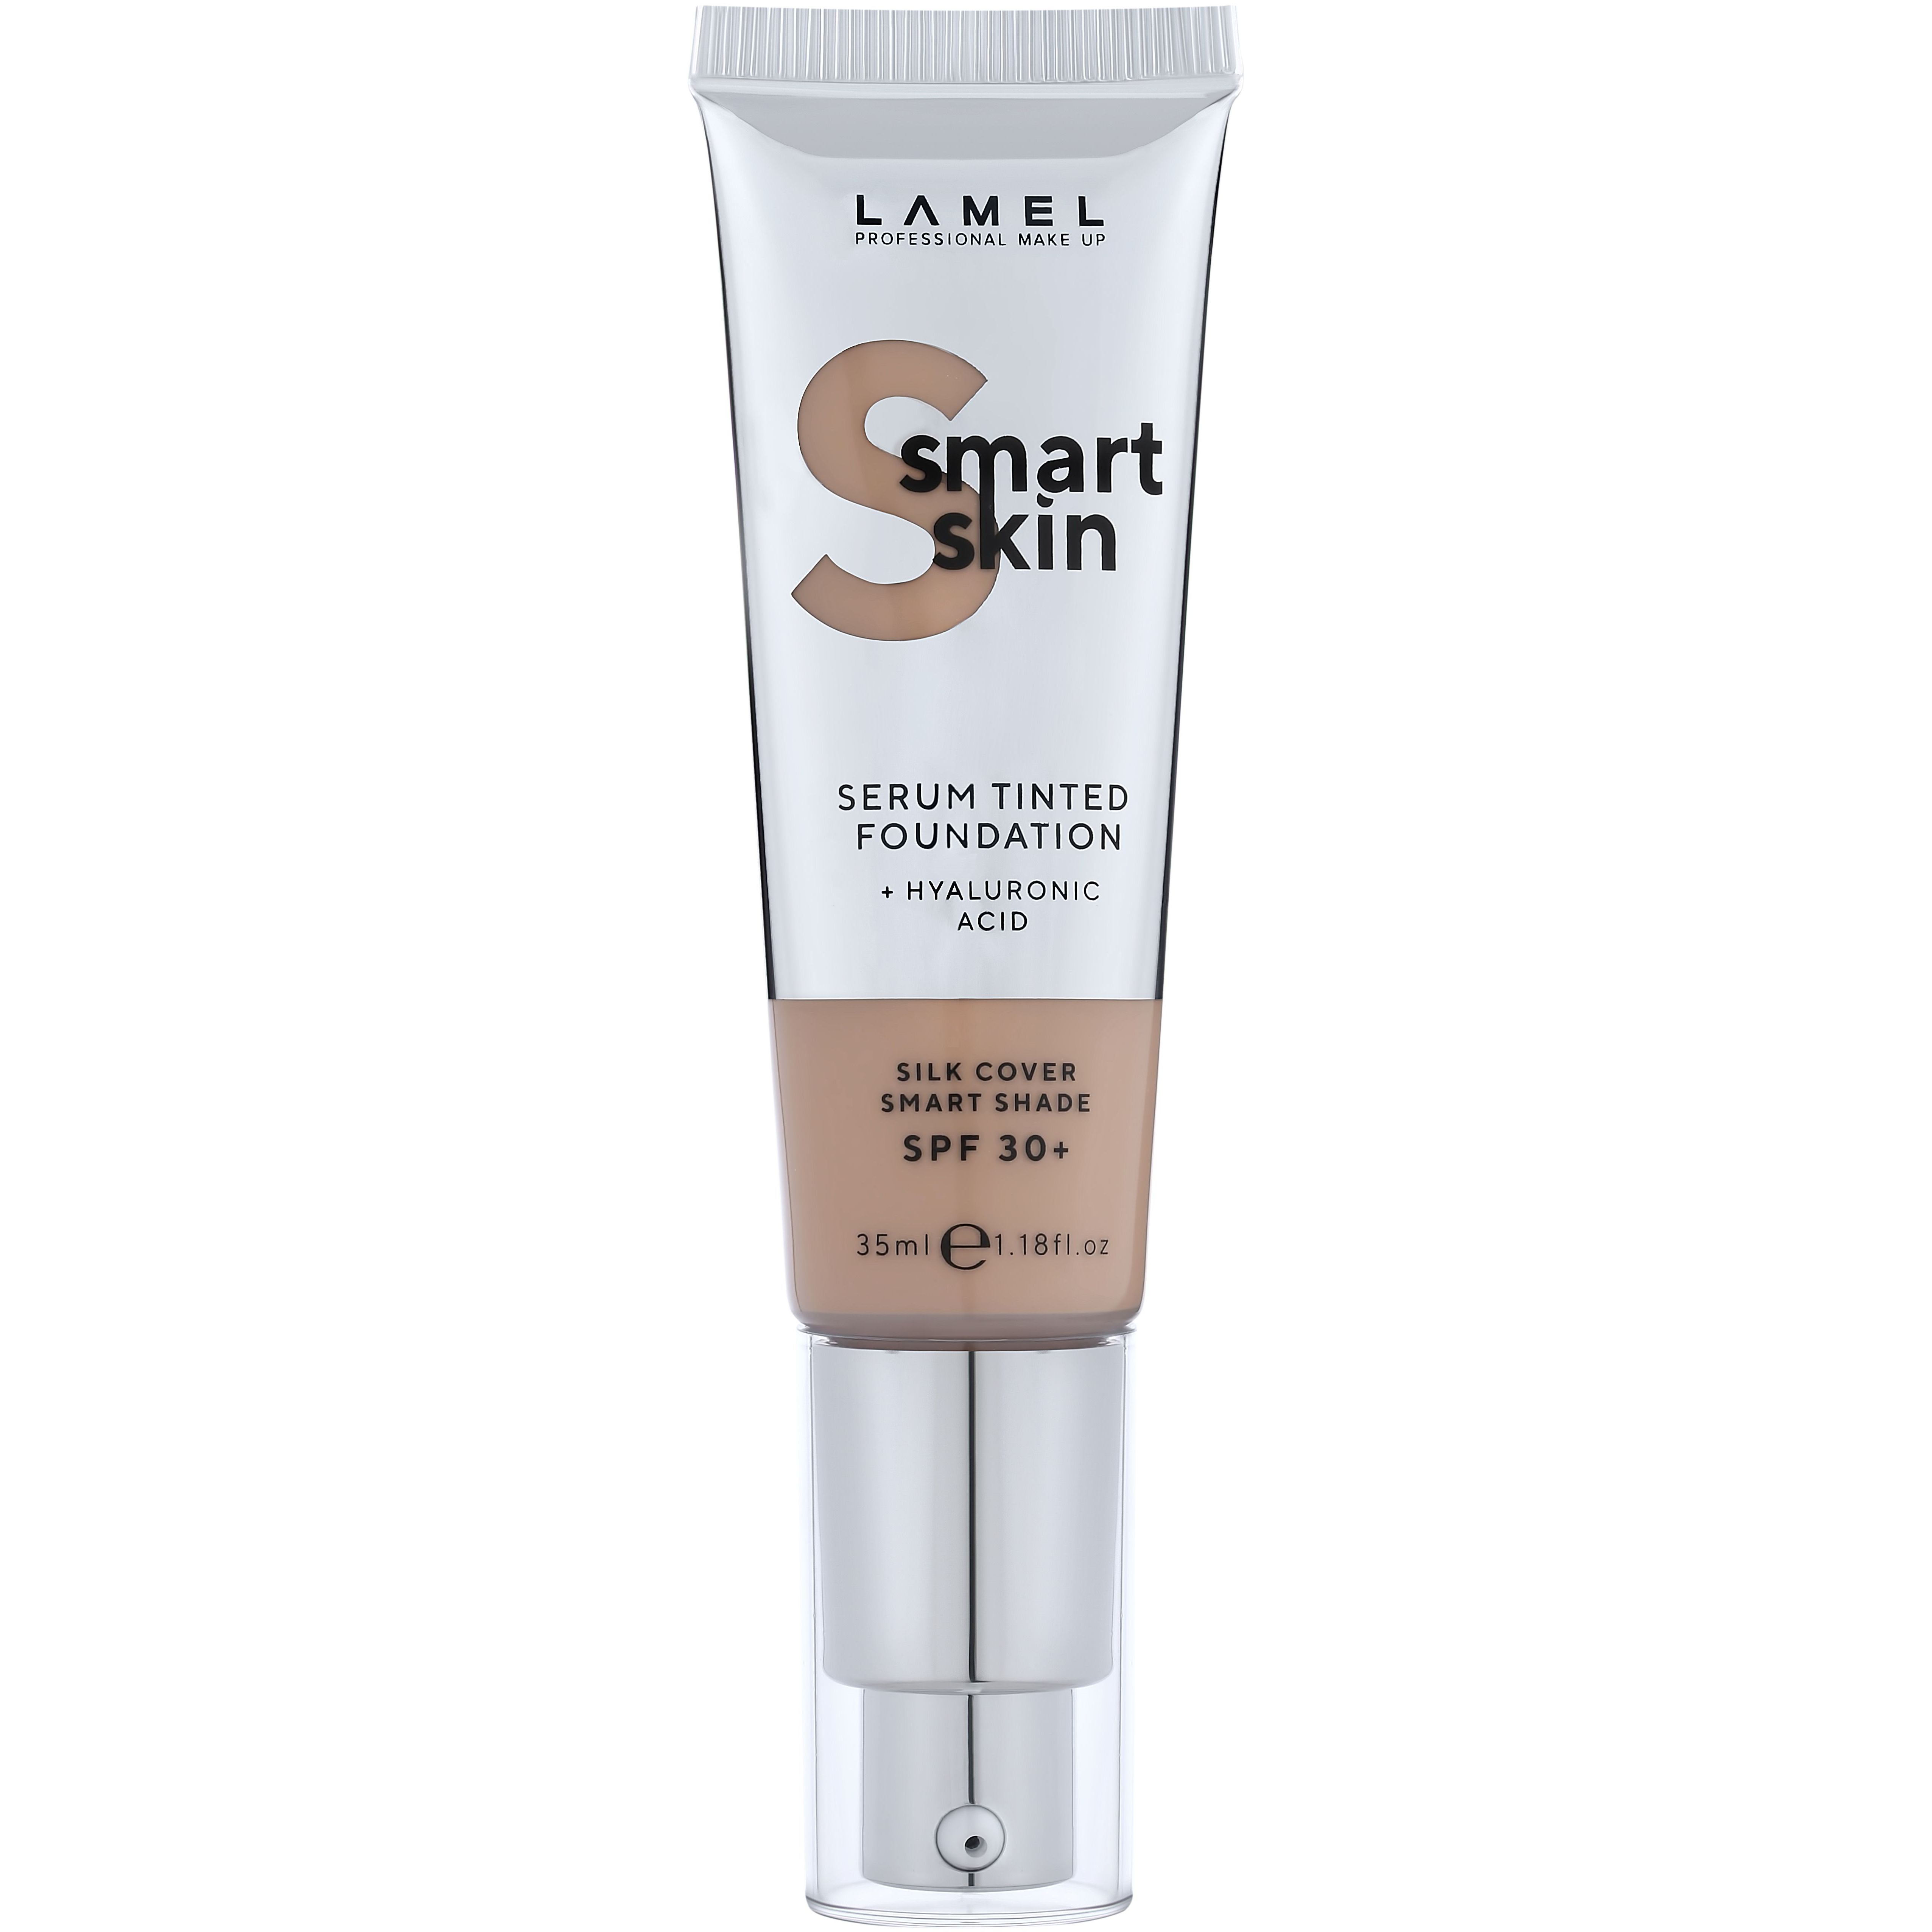 Тональная основа-сыворотка Lamel Smart Skin Serum Tinted Foundation тон 404, 35 мл - фото 1